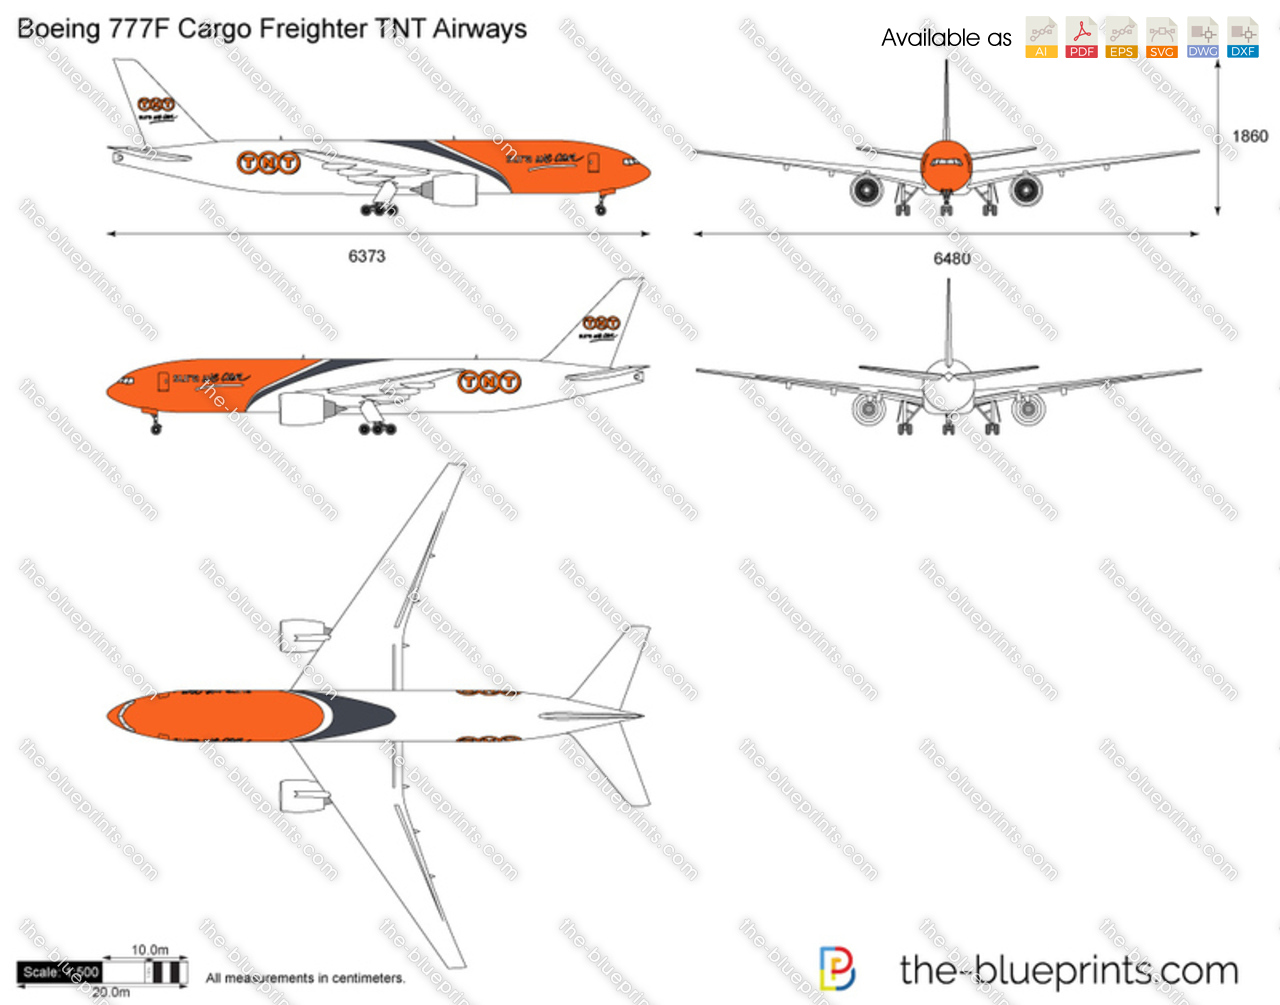 Boeing 777F Cargo Freighter TNT Airways